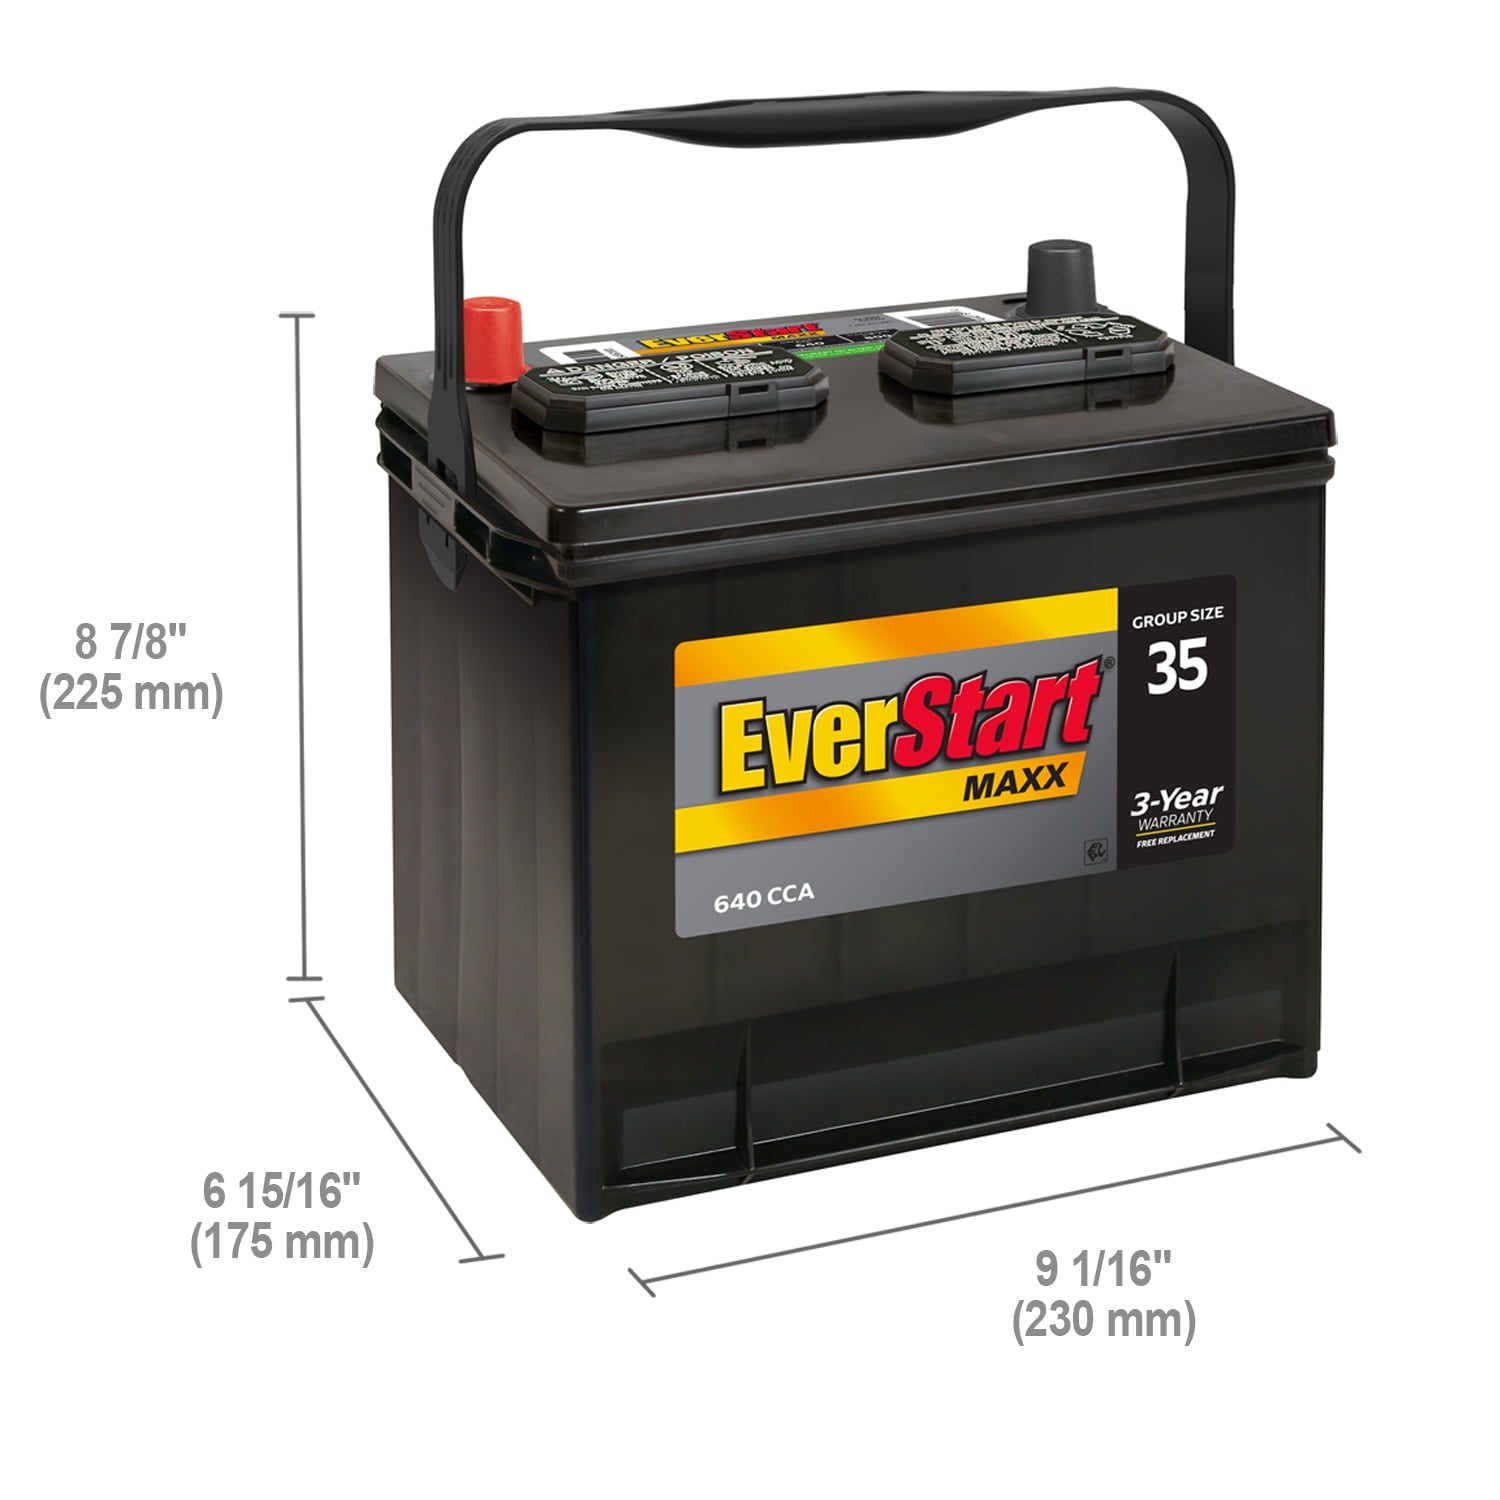 Rynke panden vandring I de fleste tilfælde EverStart Maxx Lead Acid Automotive Battery, Group Size 35N, 12 Volt 640  CCA - Walmart.com